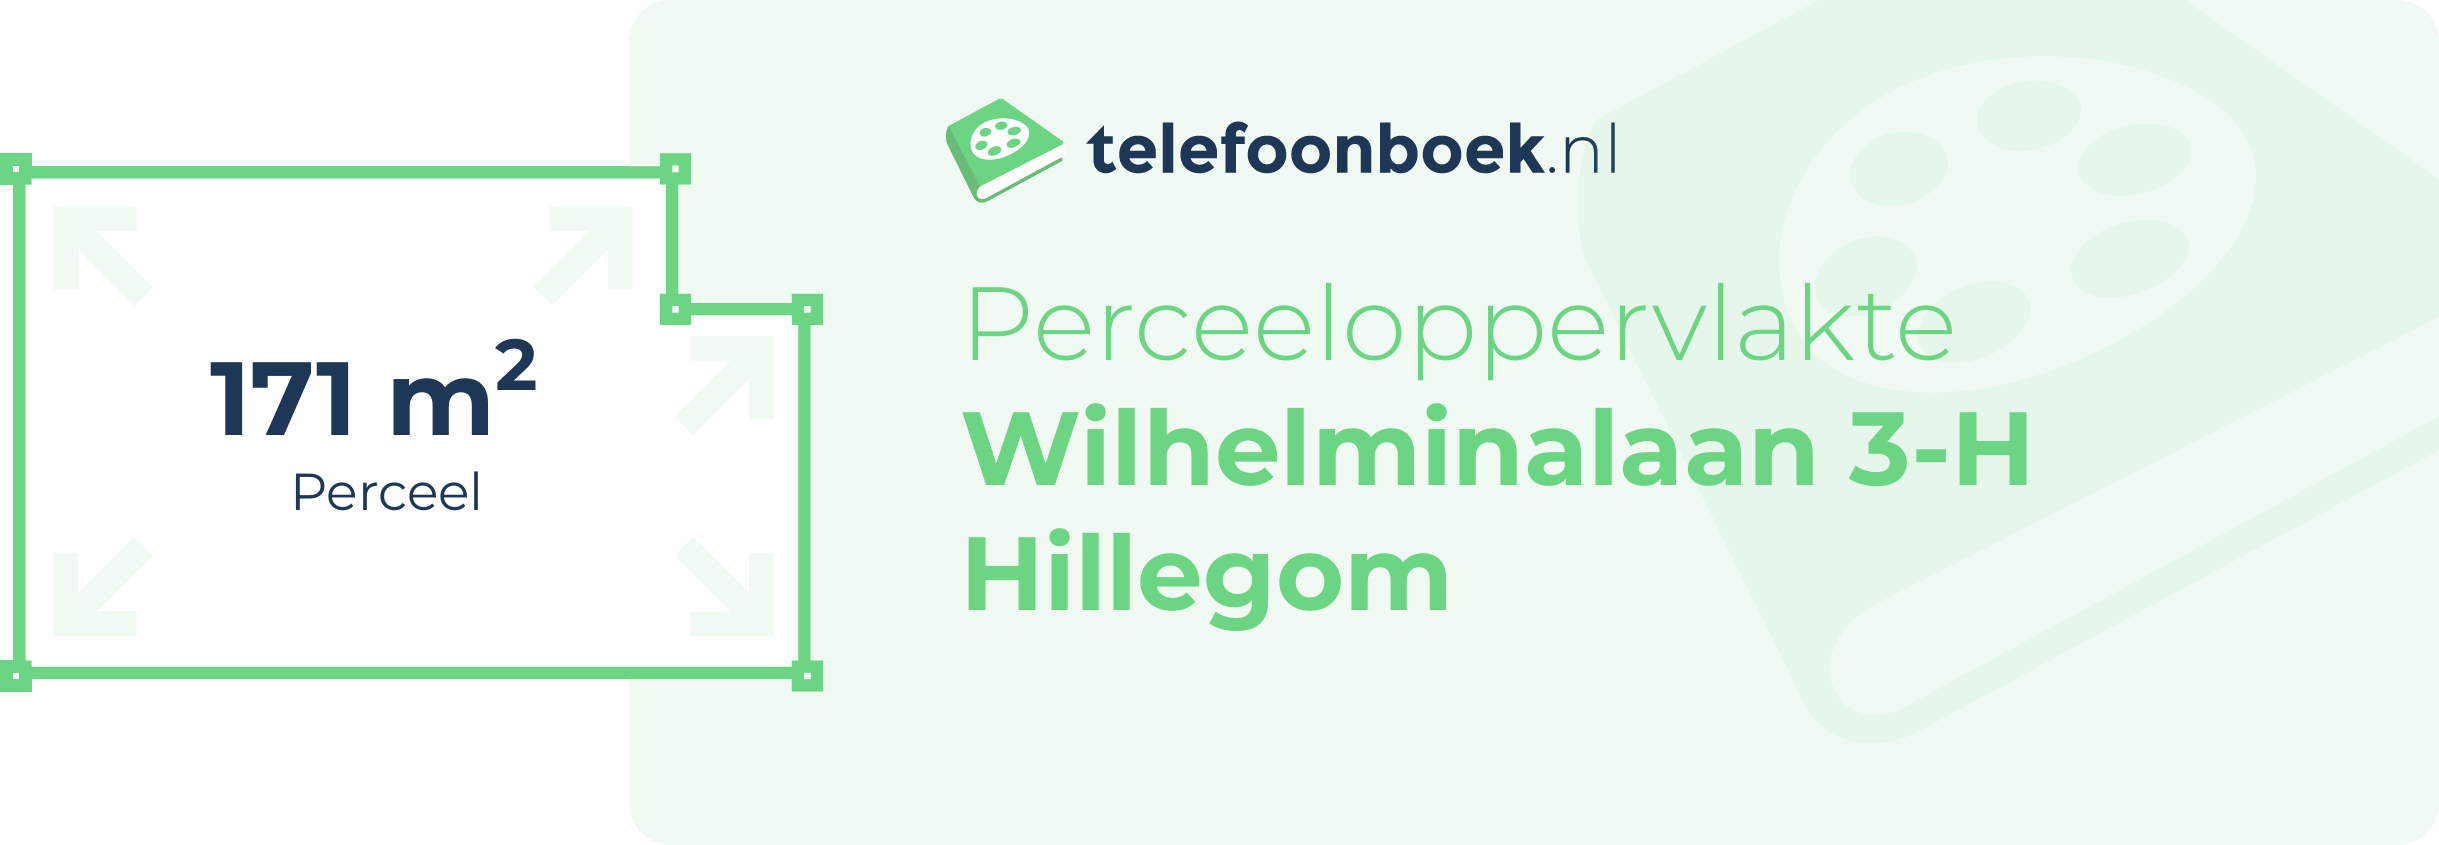 Perceeloppervlakte Wilhelminalaan 3-H Hillegom